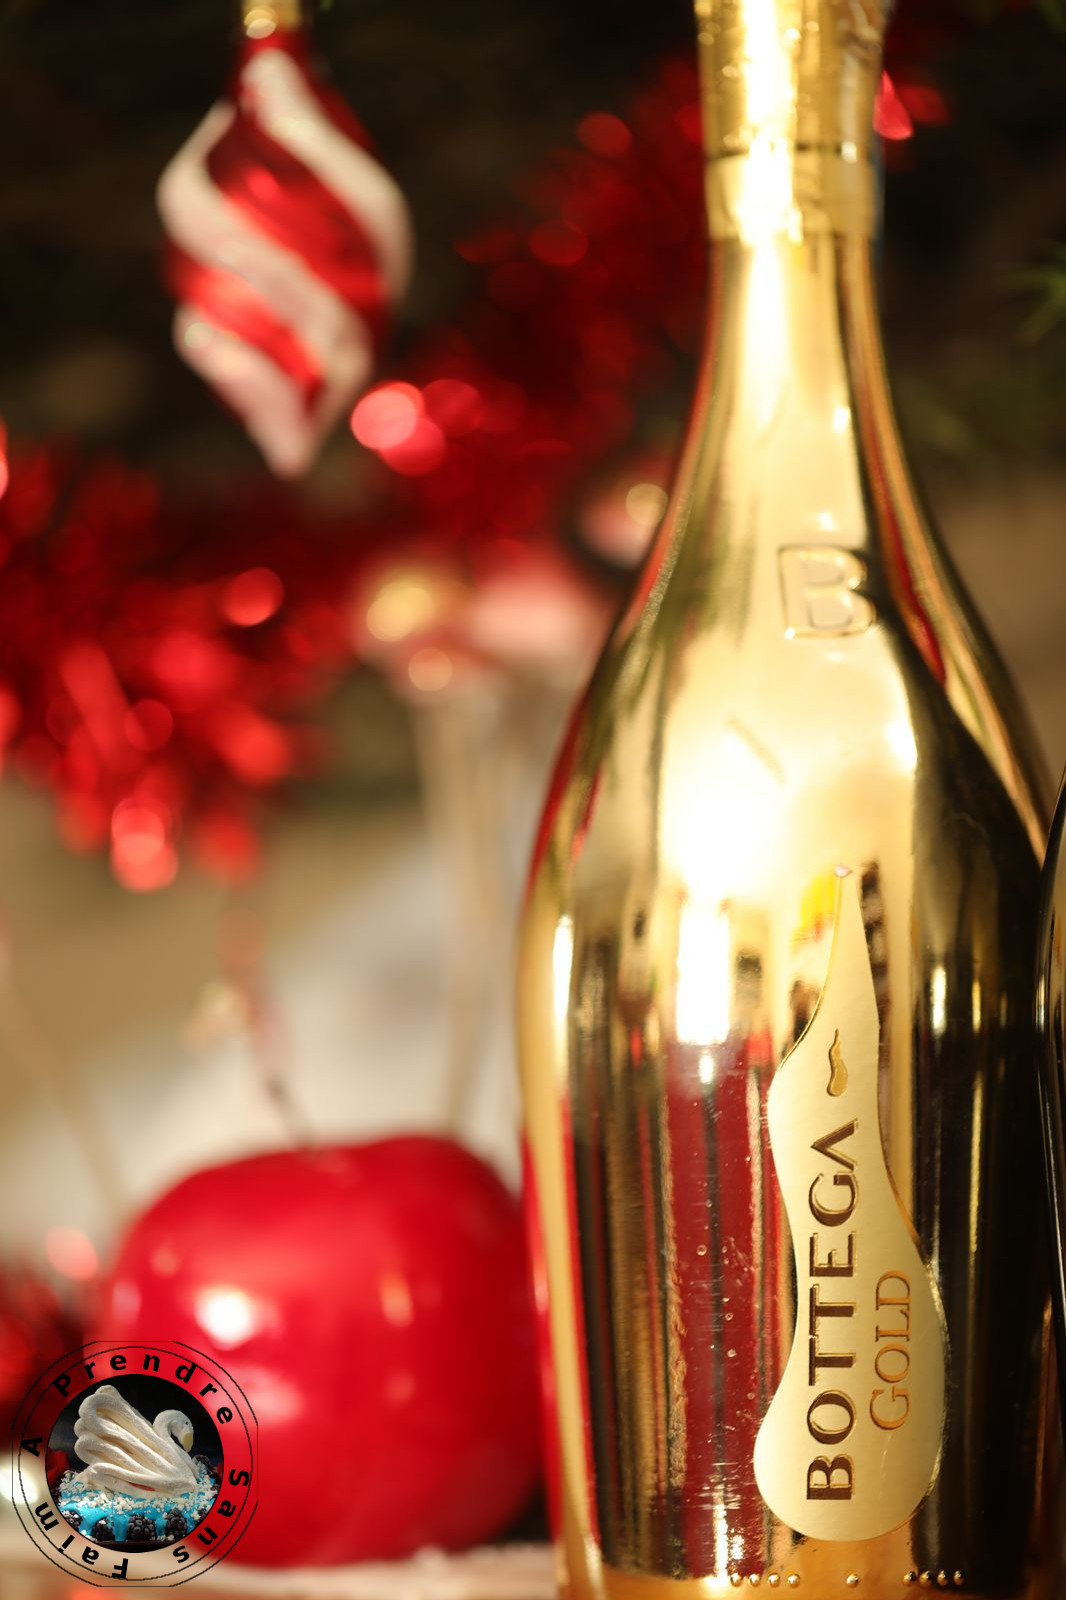 Accords mets et vins à Noël avec Bottega